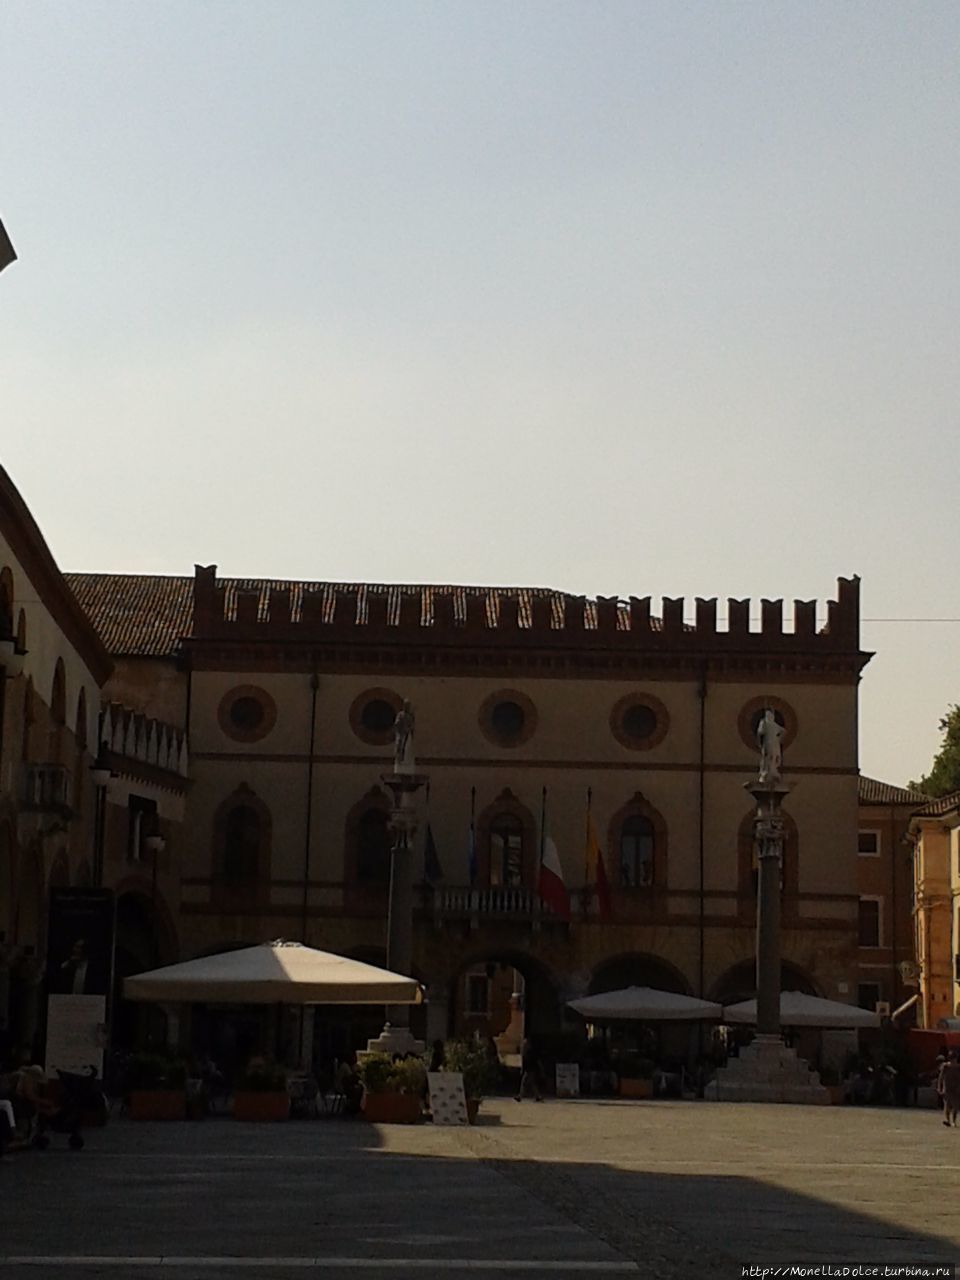 Равэнна: исторический центр города Равенна, Италия